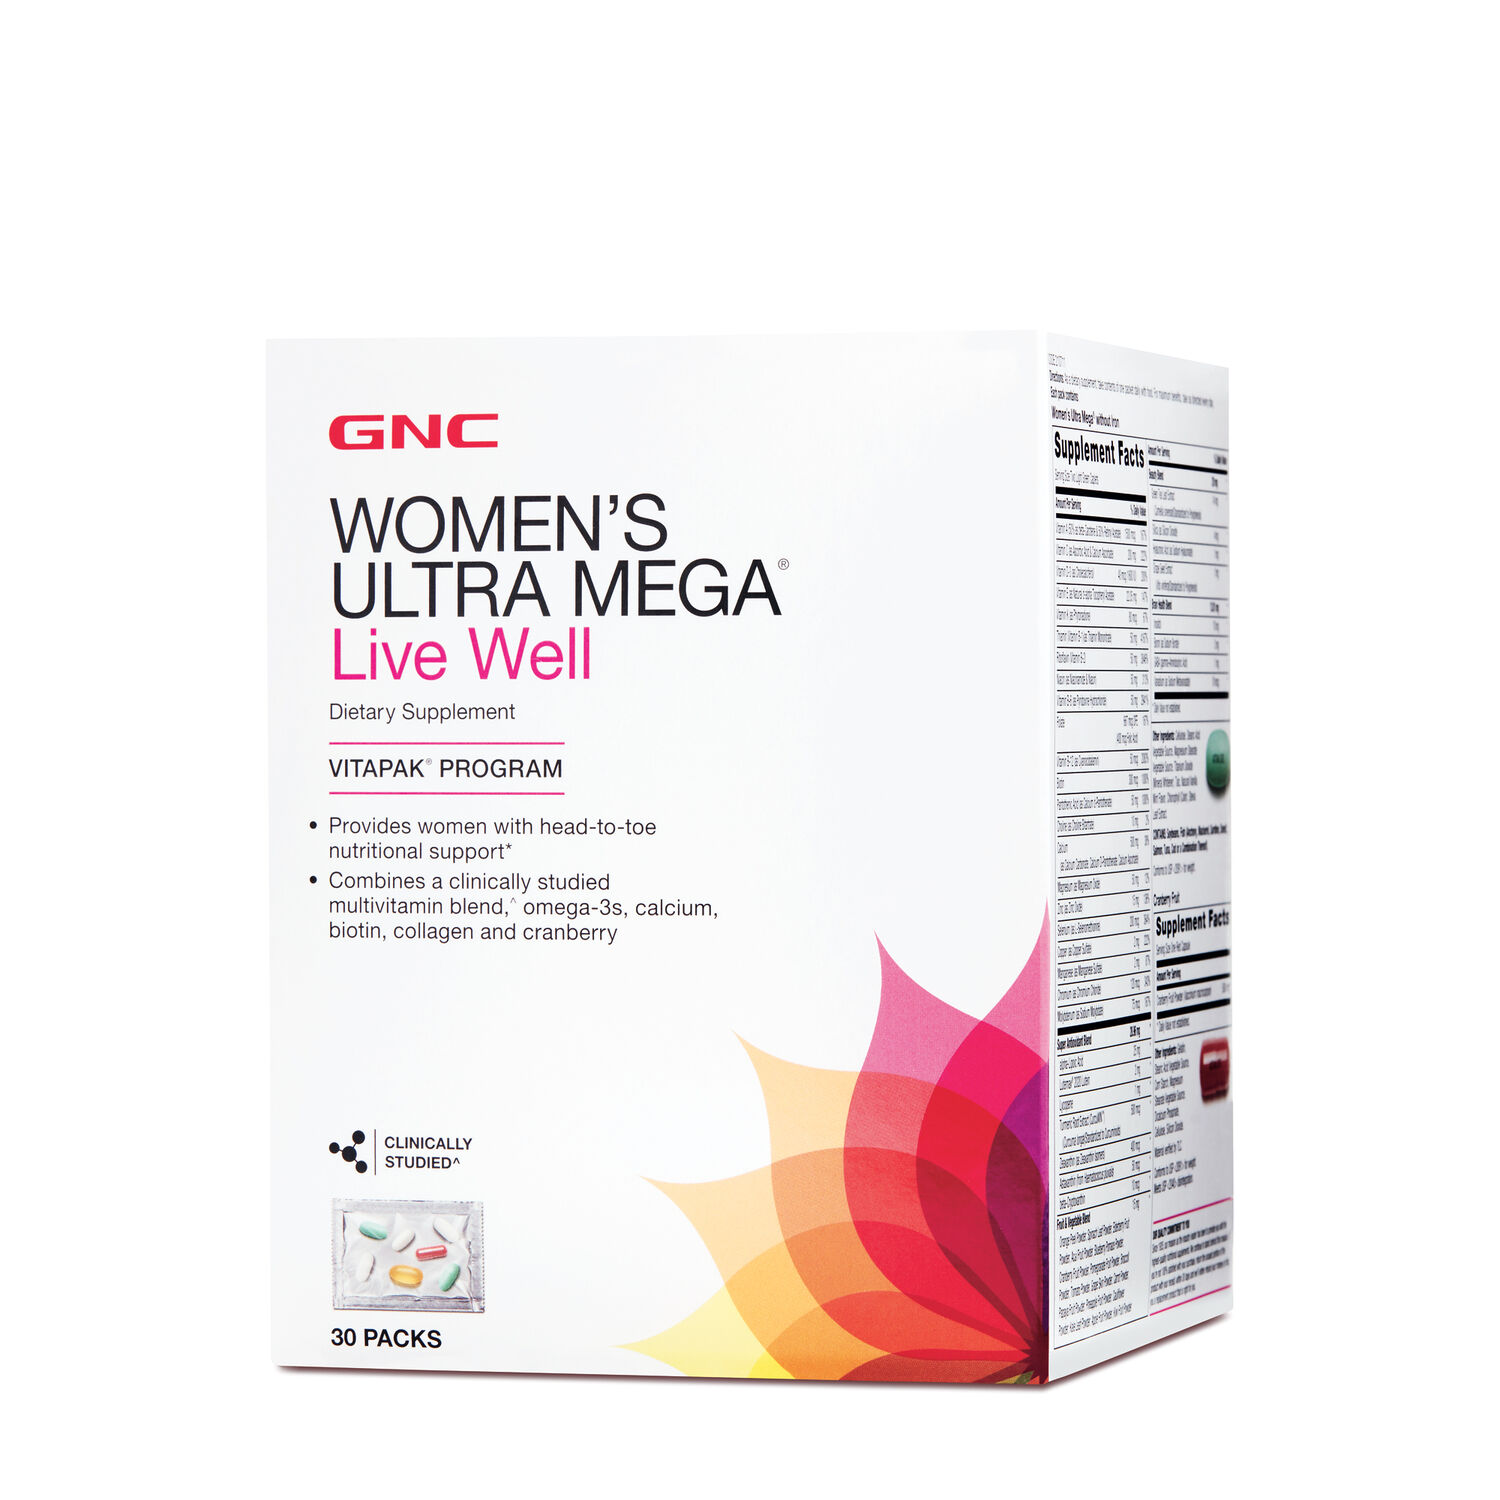 GNC Women's Ultra Mega Live Well Vitapak Program